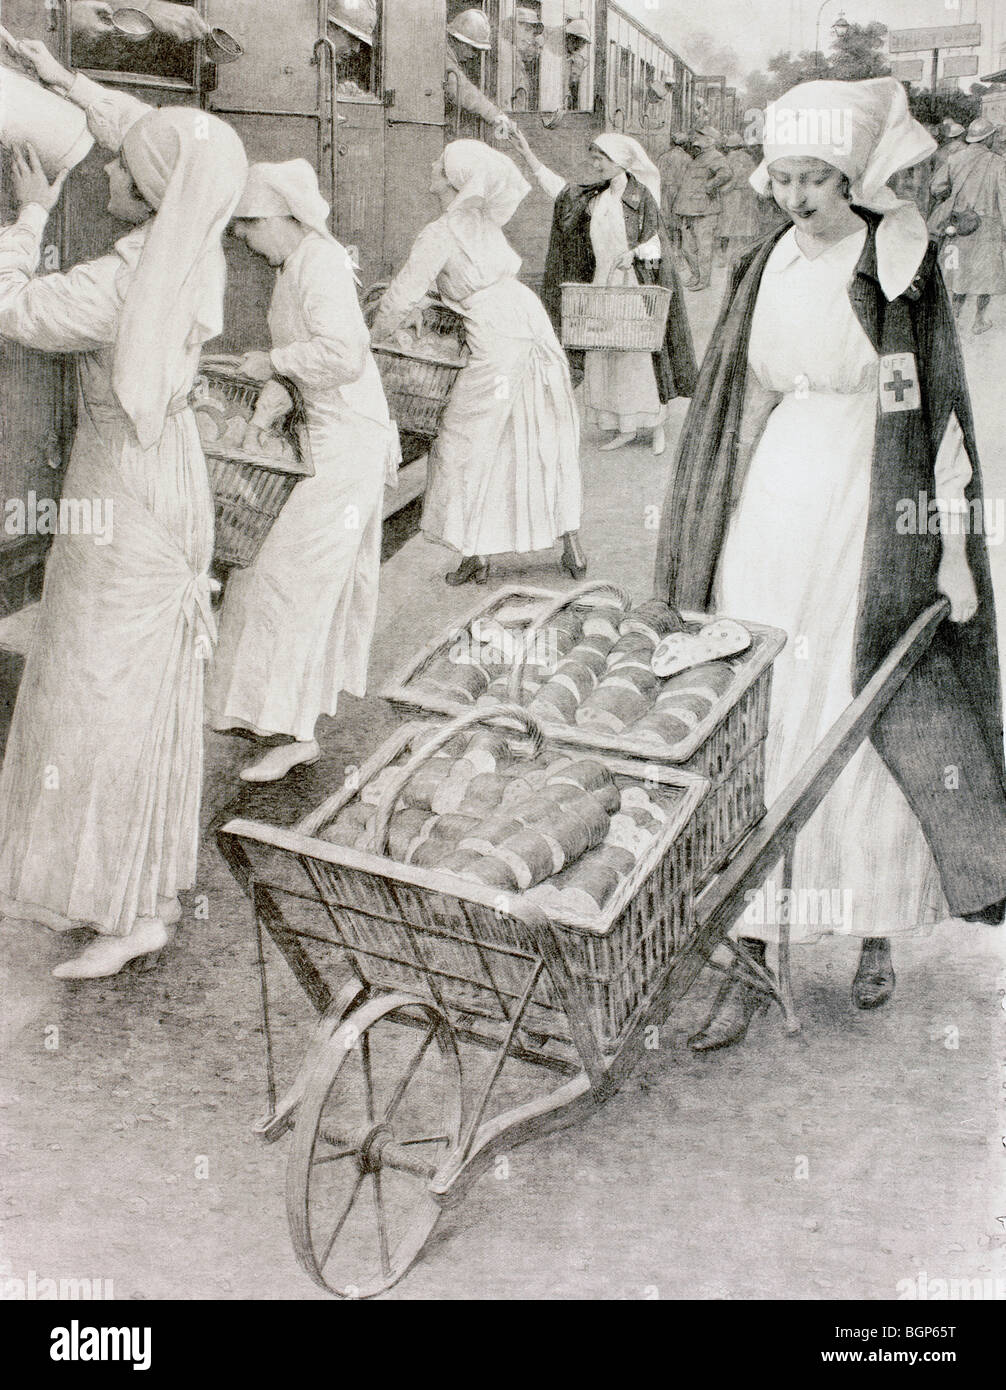 Des femmes volontaires de la Croix Rouge Française la distribution de la nourriture aux soldats français de la formation à l'avant au cours de la Première Guerre mondiale. Banque D'Images